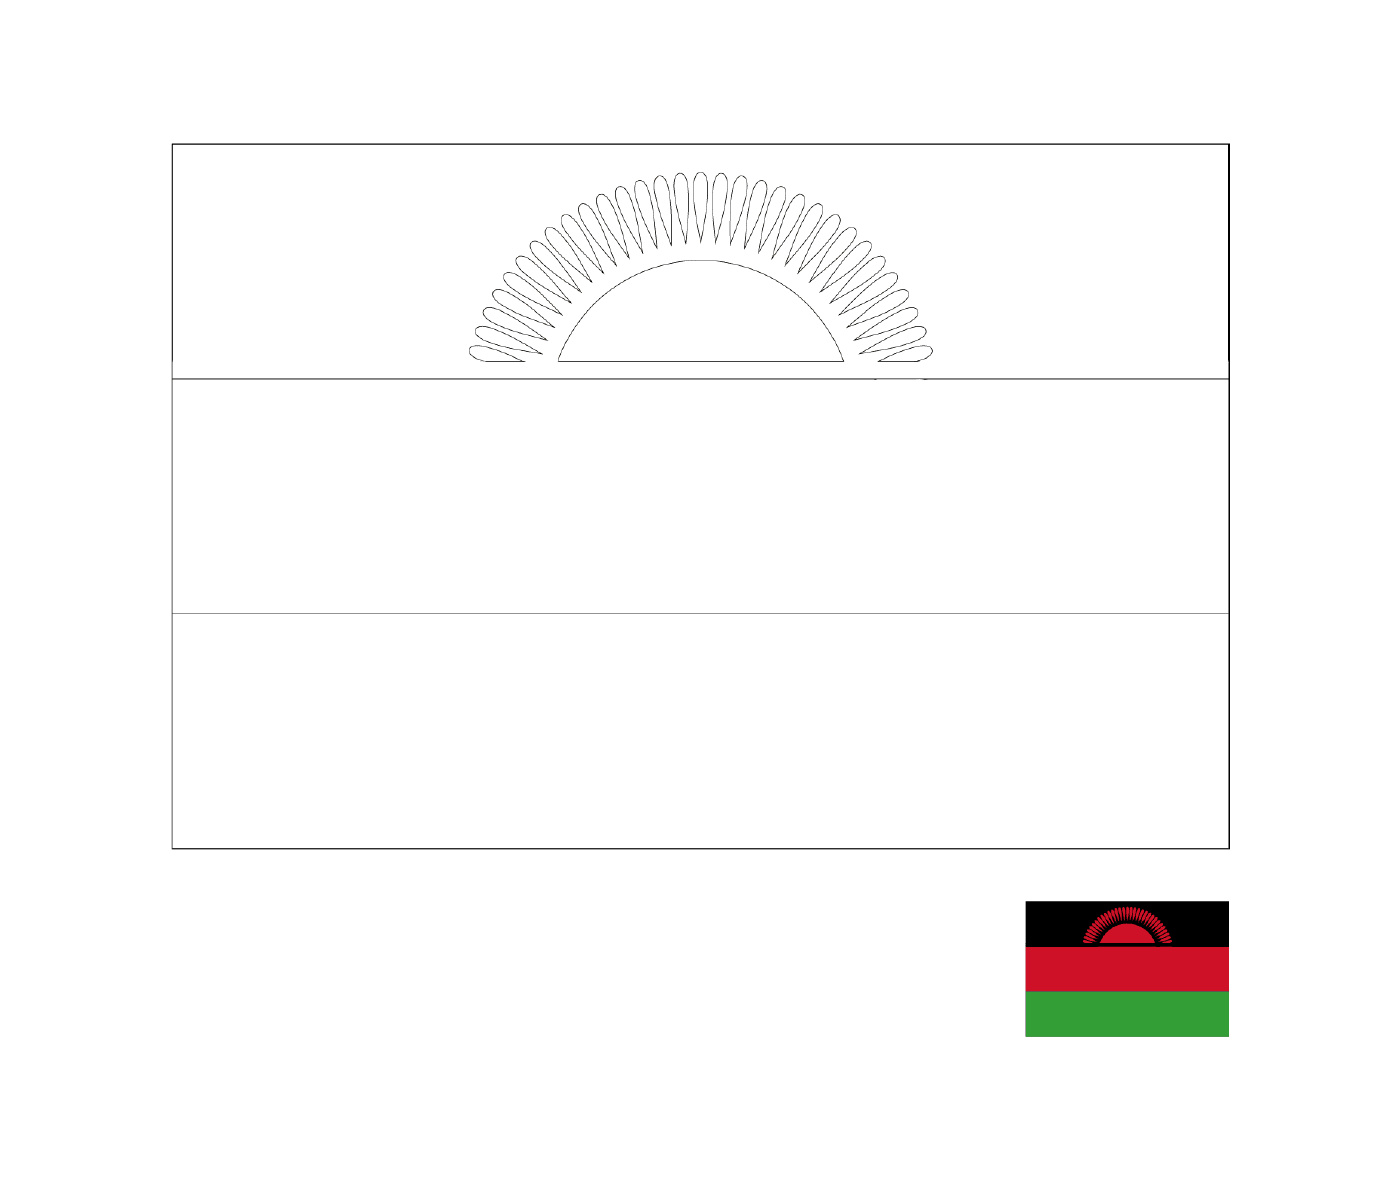  A flag of Malawi 